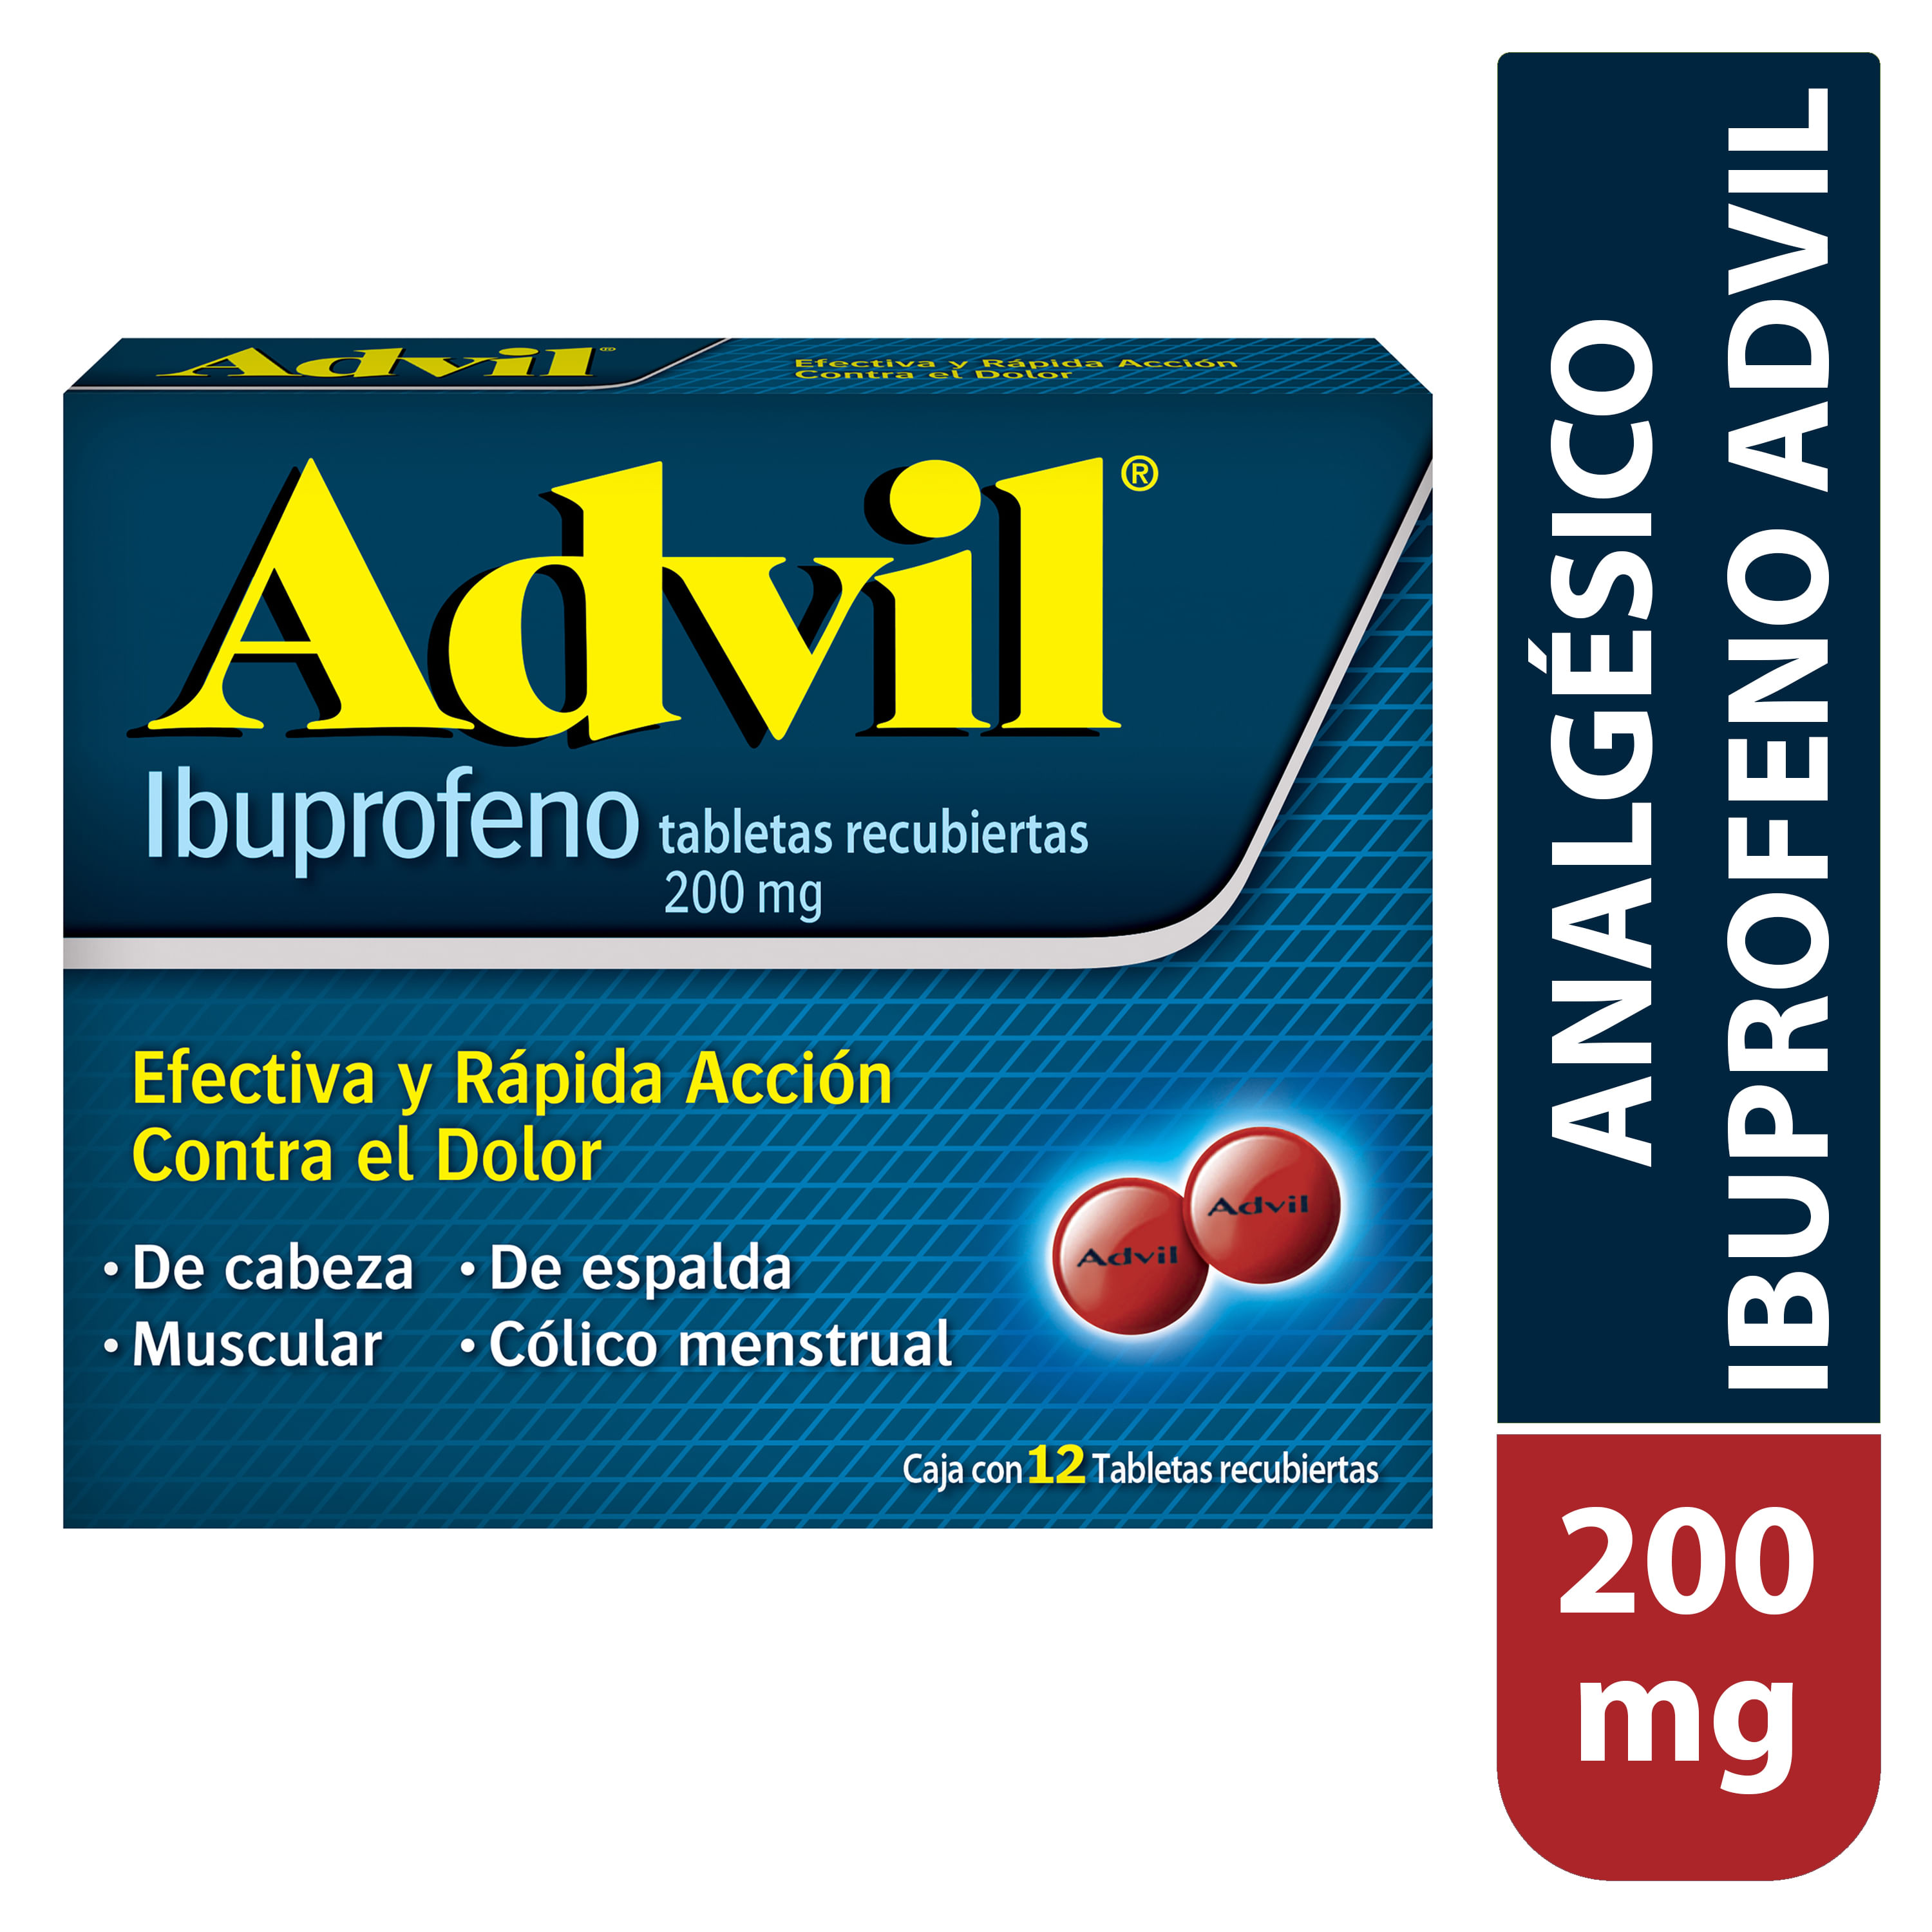 Advil-200-Mg-12-Tabletas-1-25367